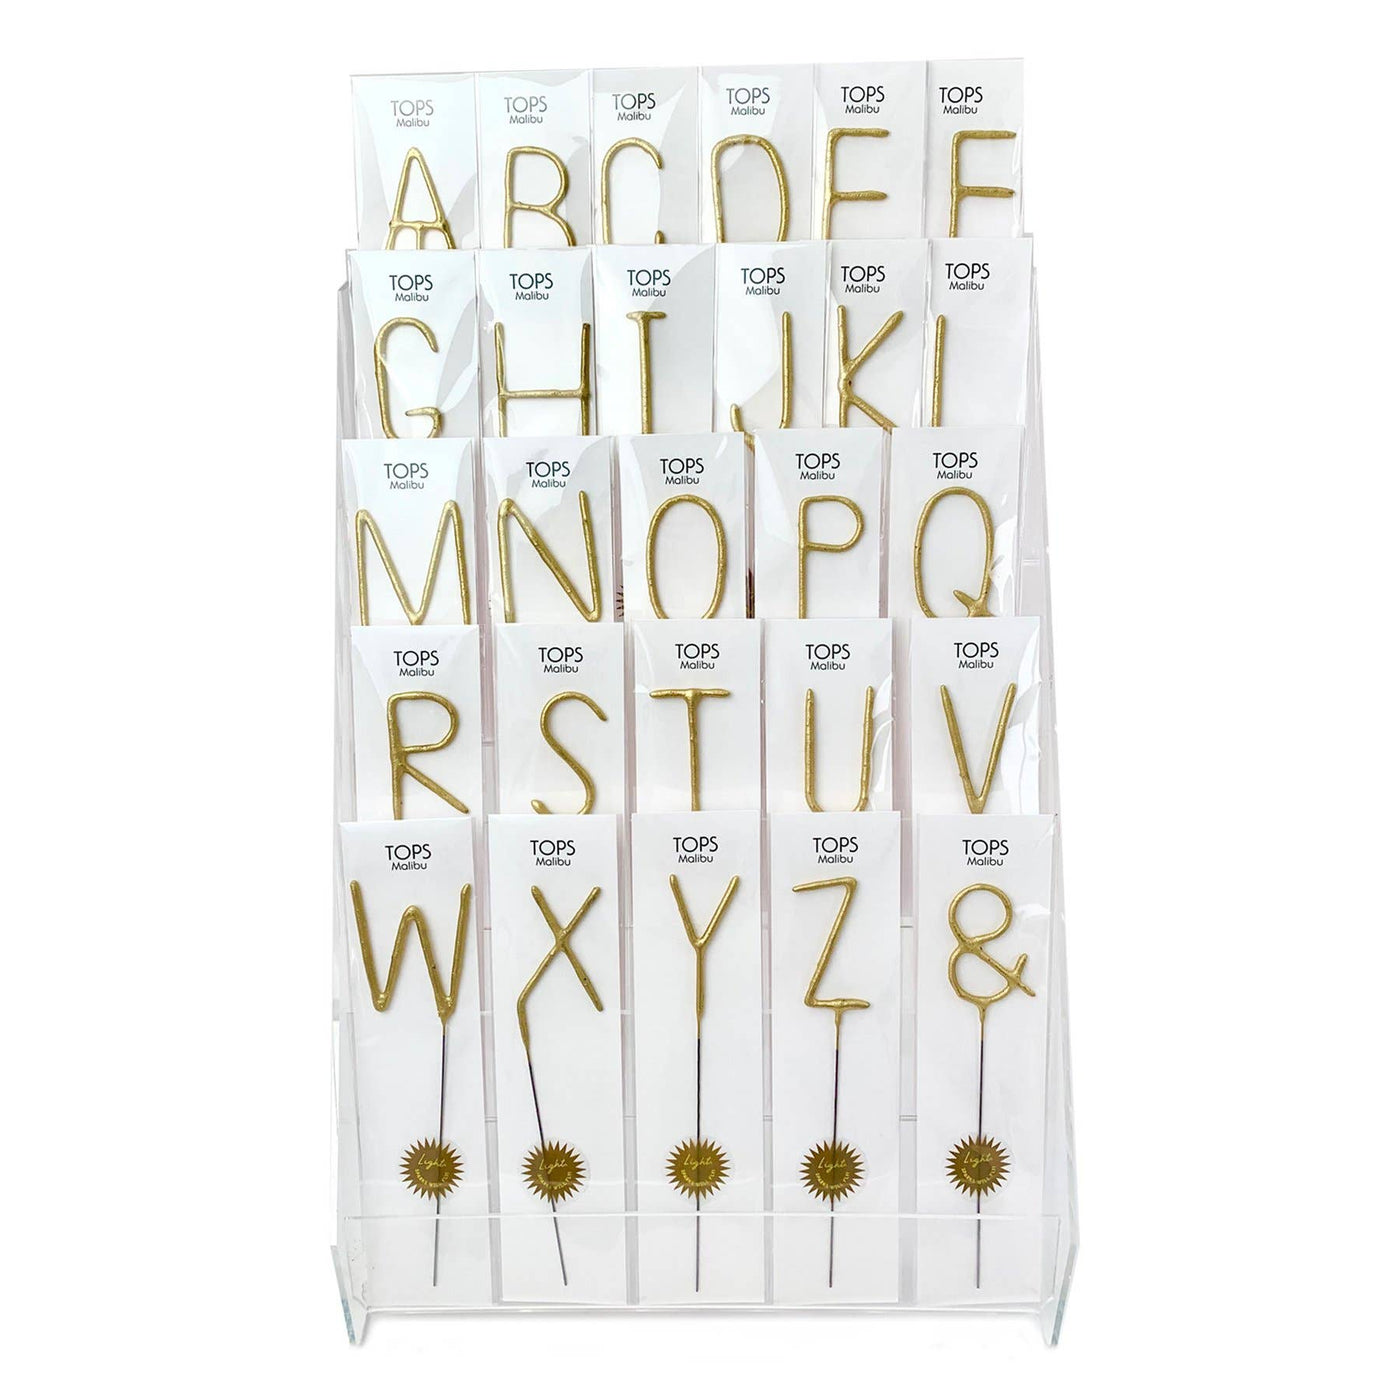 Big Golden Sparkler Wand - Letters